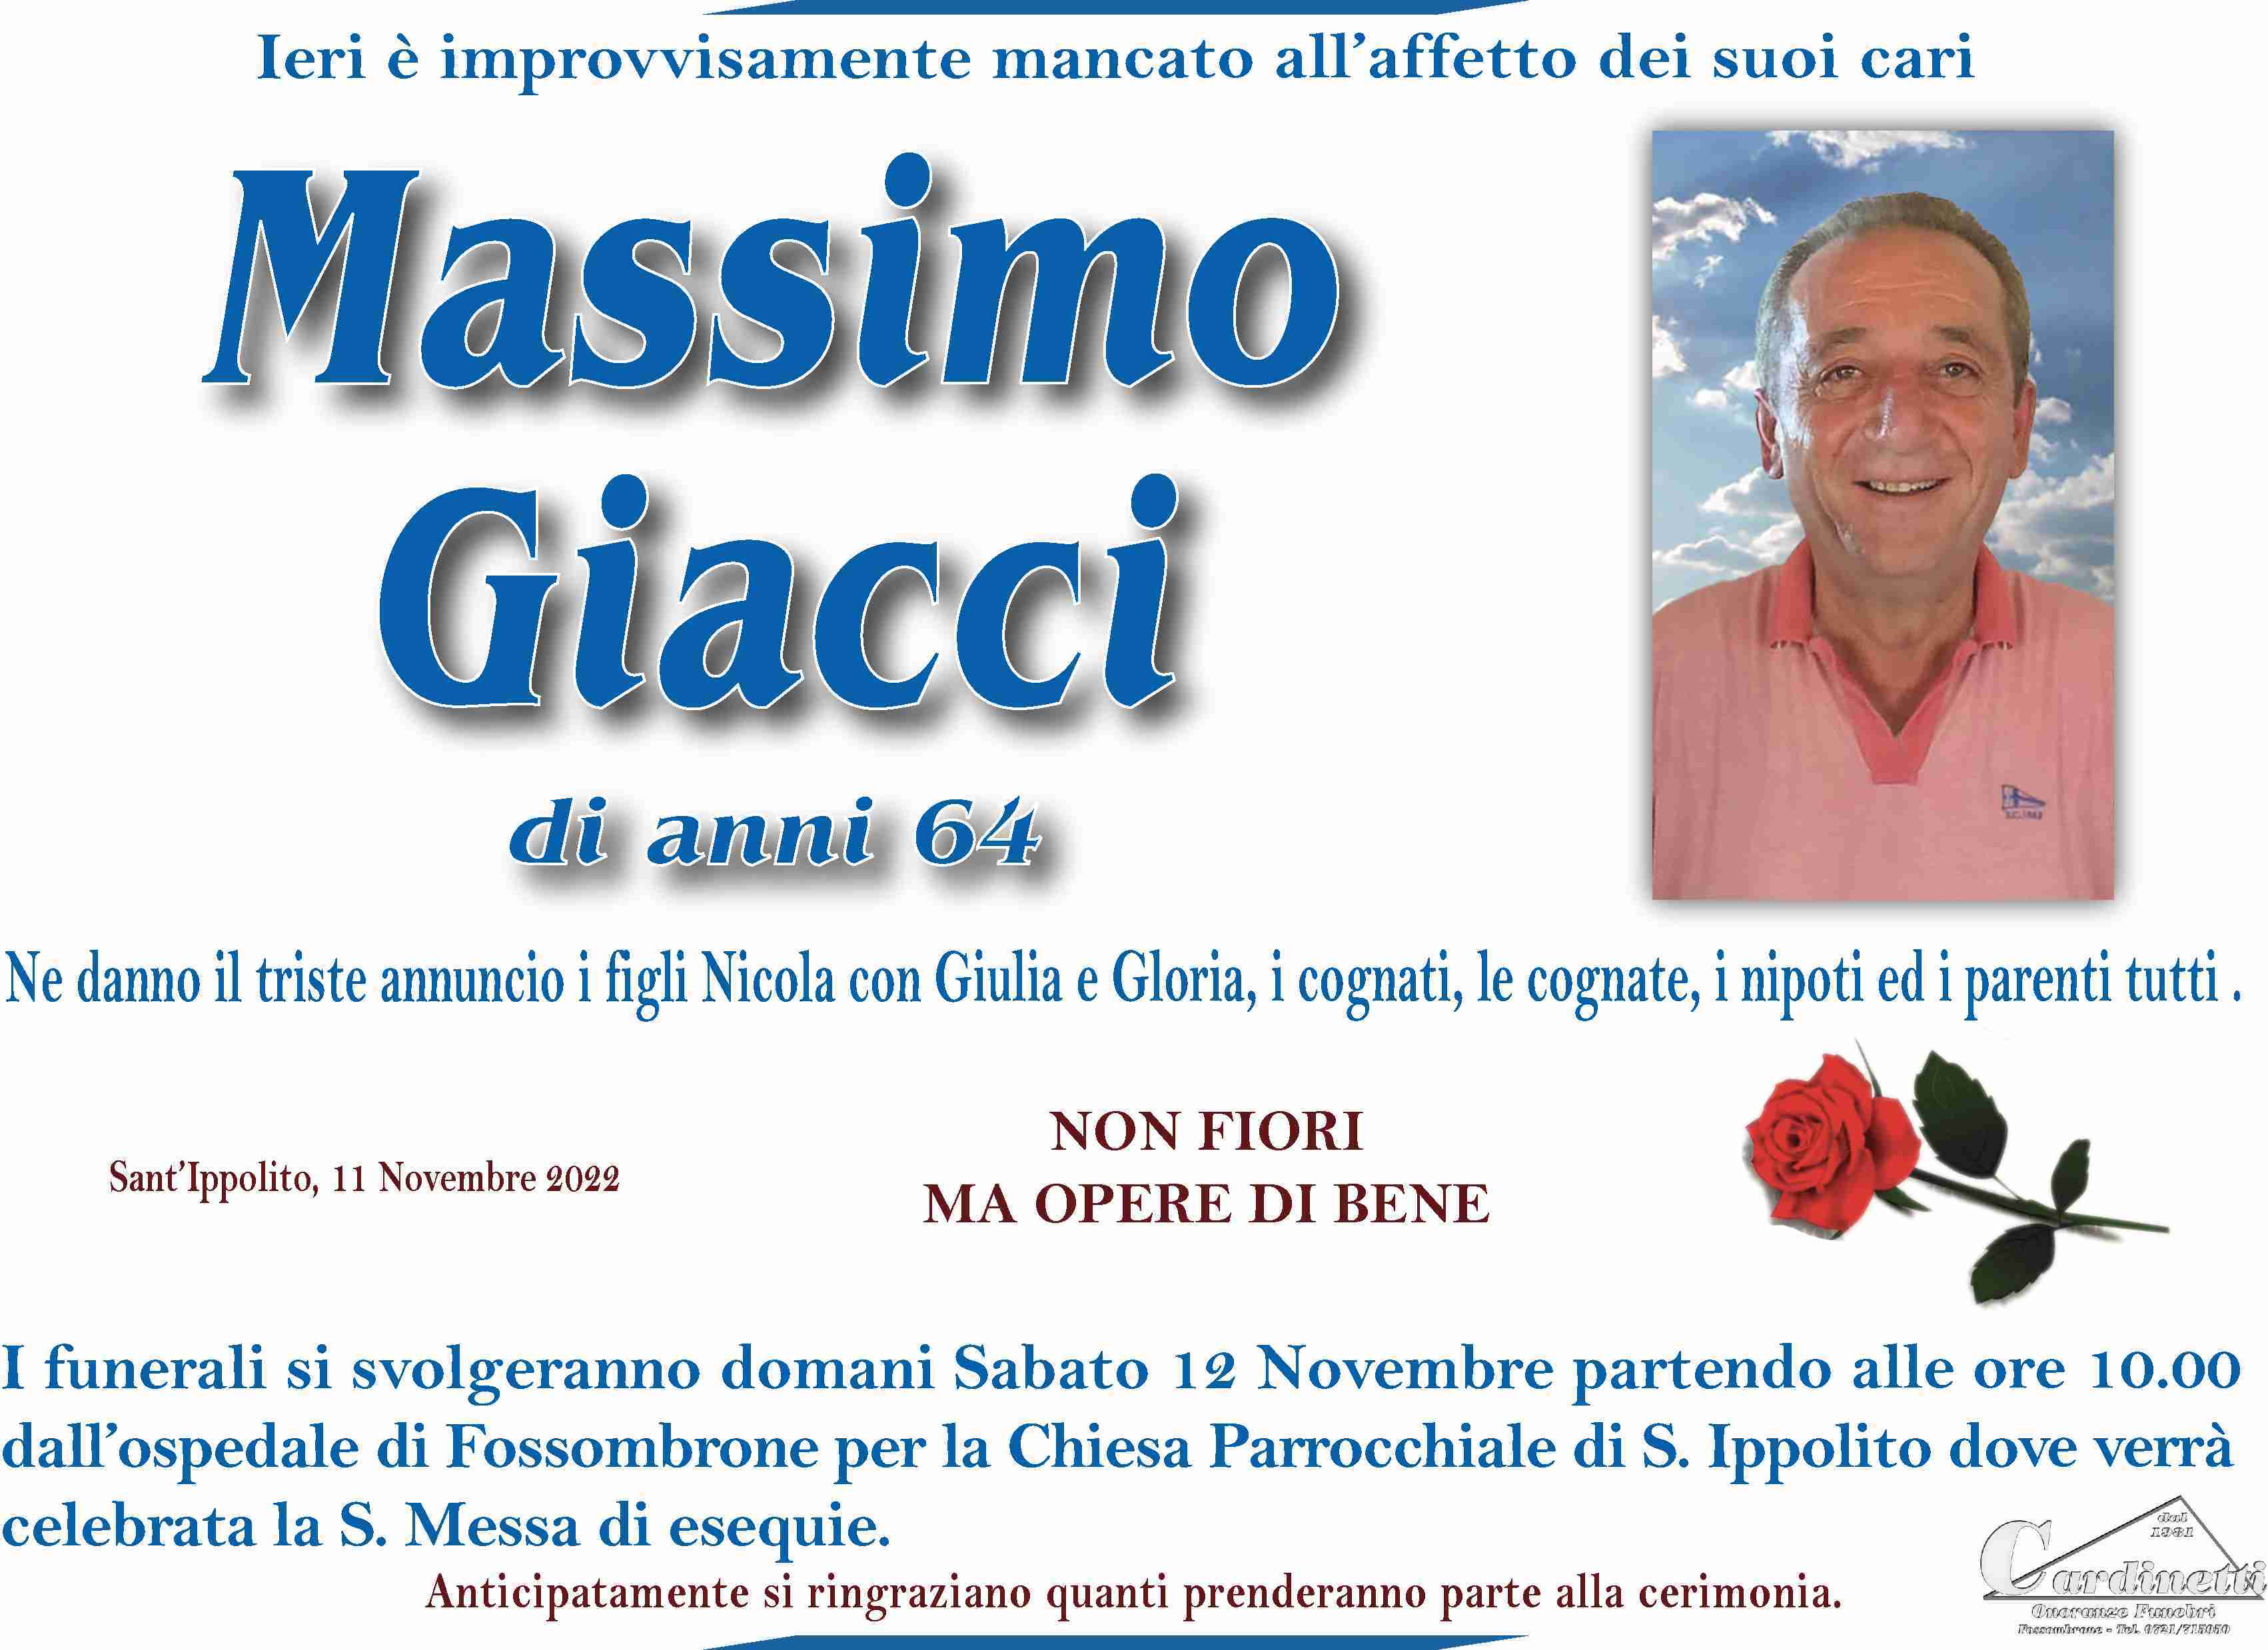 Massimo Giacci